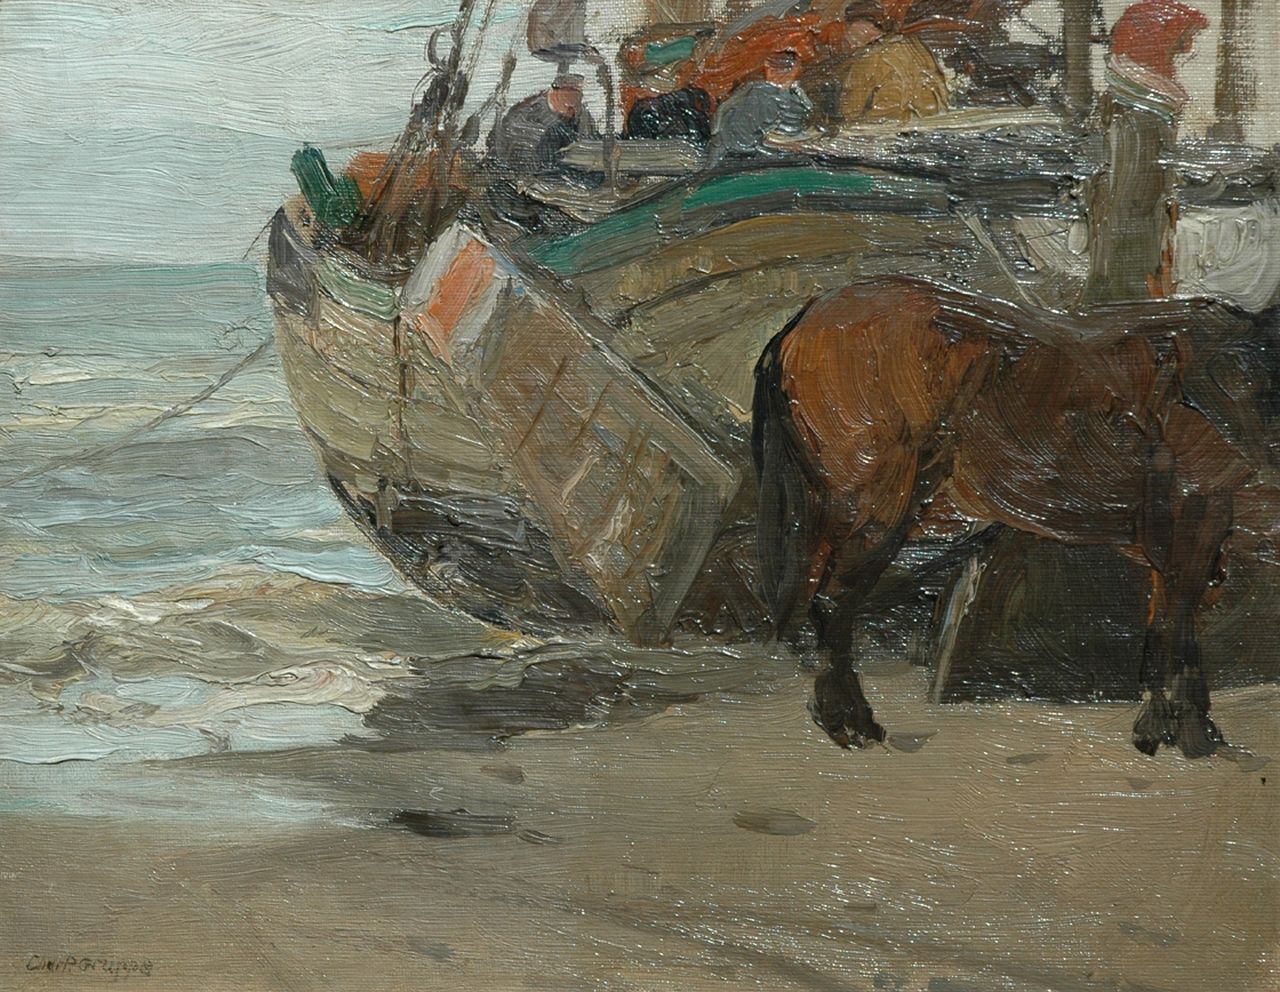 Gruppe C.P.  | Charles Paul Gruppe, Bomschuit op het strand, olieverf op doek op schildersboard 25,3 x 32,1 cm, gesigneerd linksonder